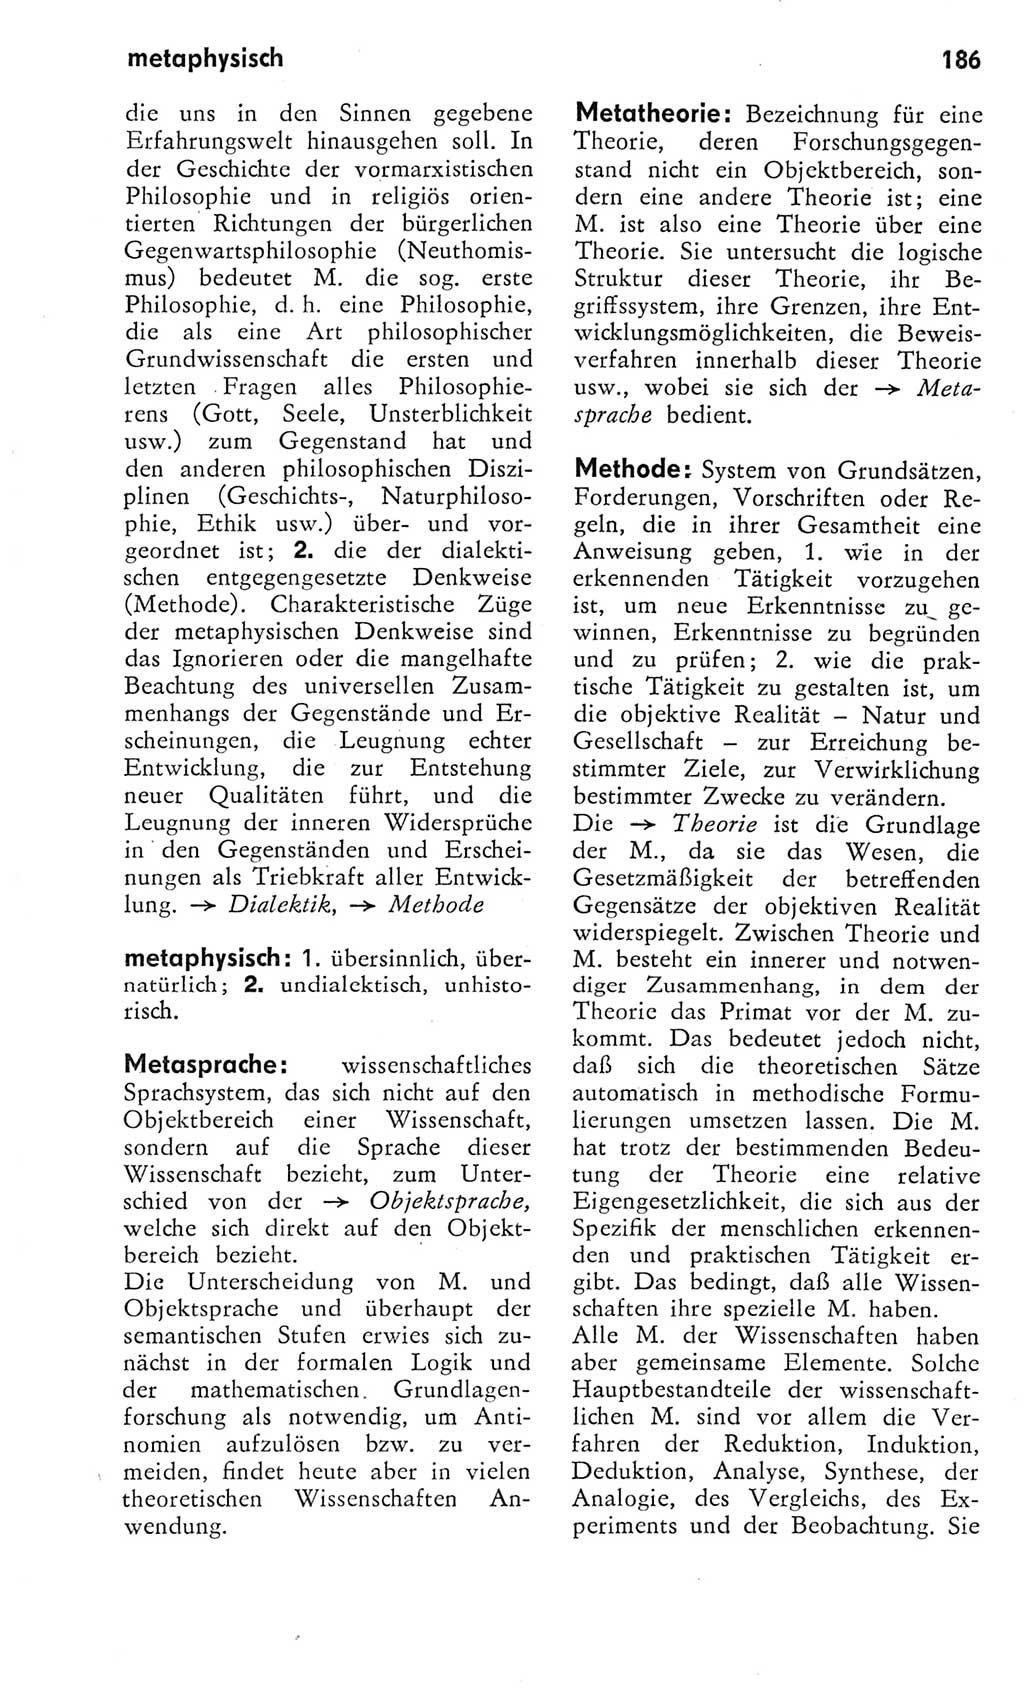 Kleines Wörterbuch der marxistisch-leninistischen Philosophie [Deutsche Demokratische Republik (DDR)] 1975, Seite 186 (Kl. Wb. ML Phil. DDR 1975, S. 186)